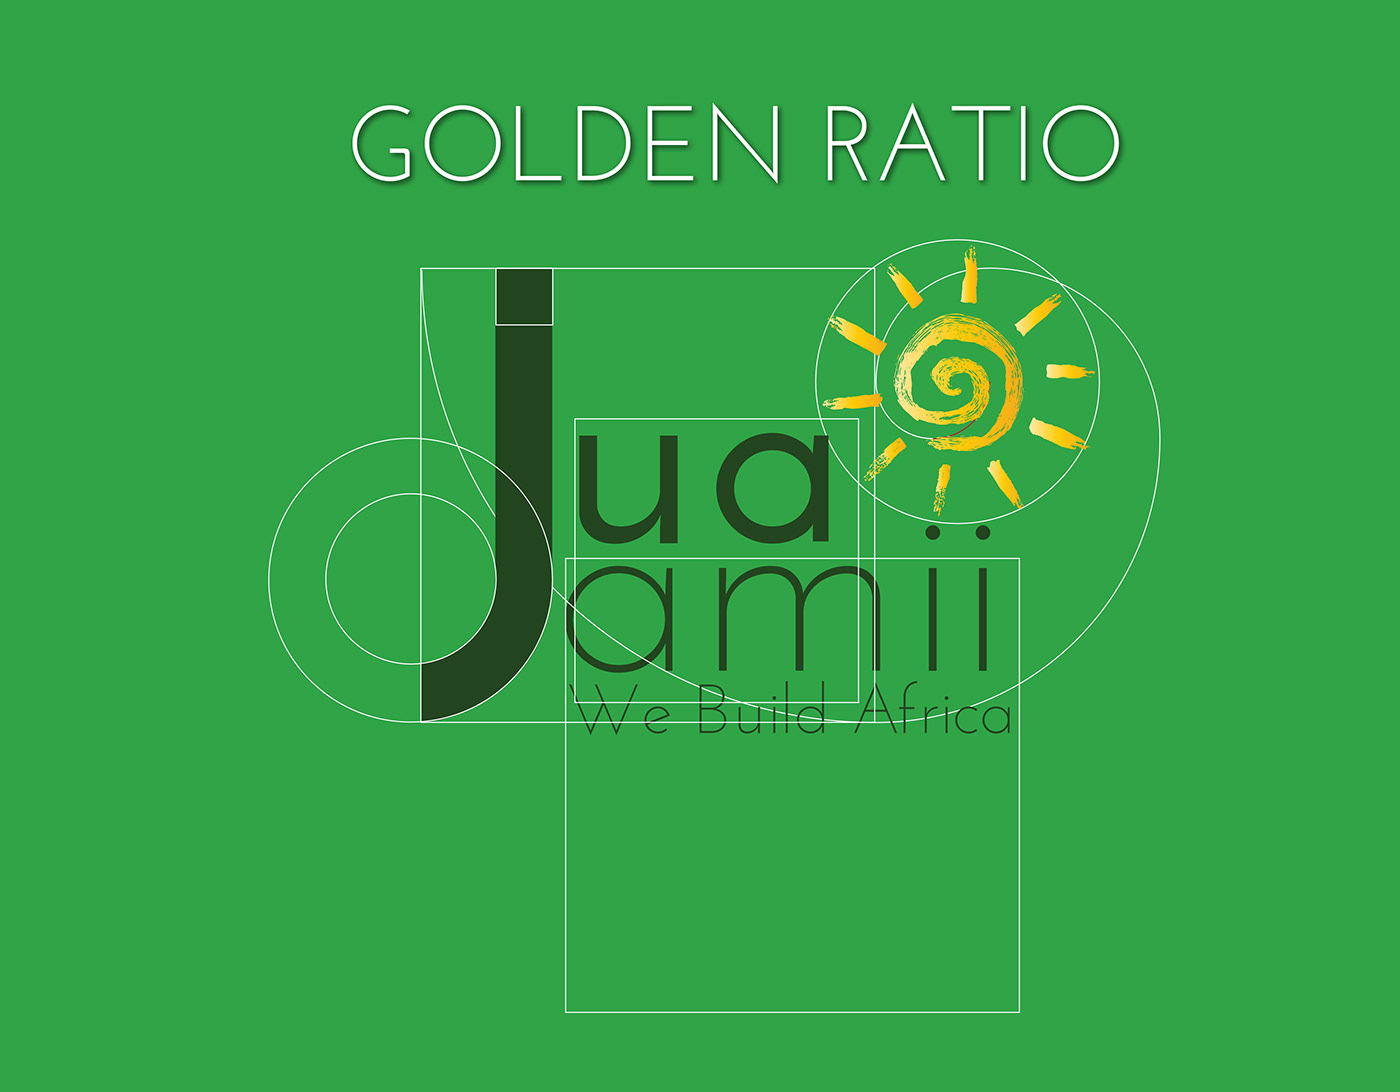 Jua Jamii's logo built with Golden ration.